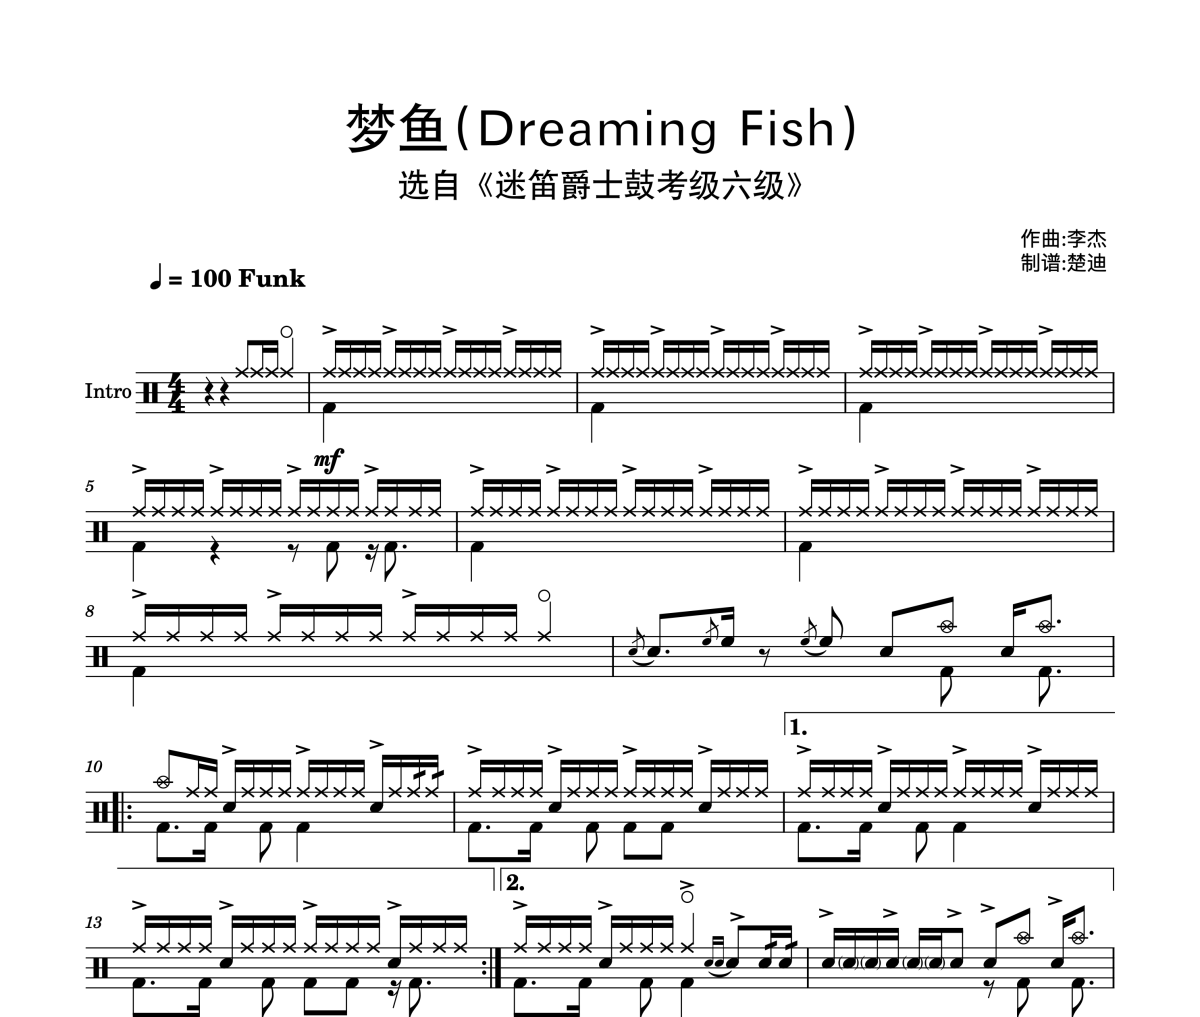 李杰-梦鱼(Dreaming Fish)原版Fill迷笛考级曲6级架子鼓|爵士鼓|鼓谱